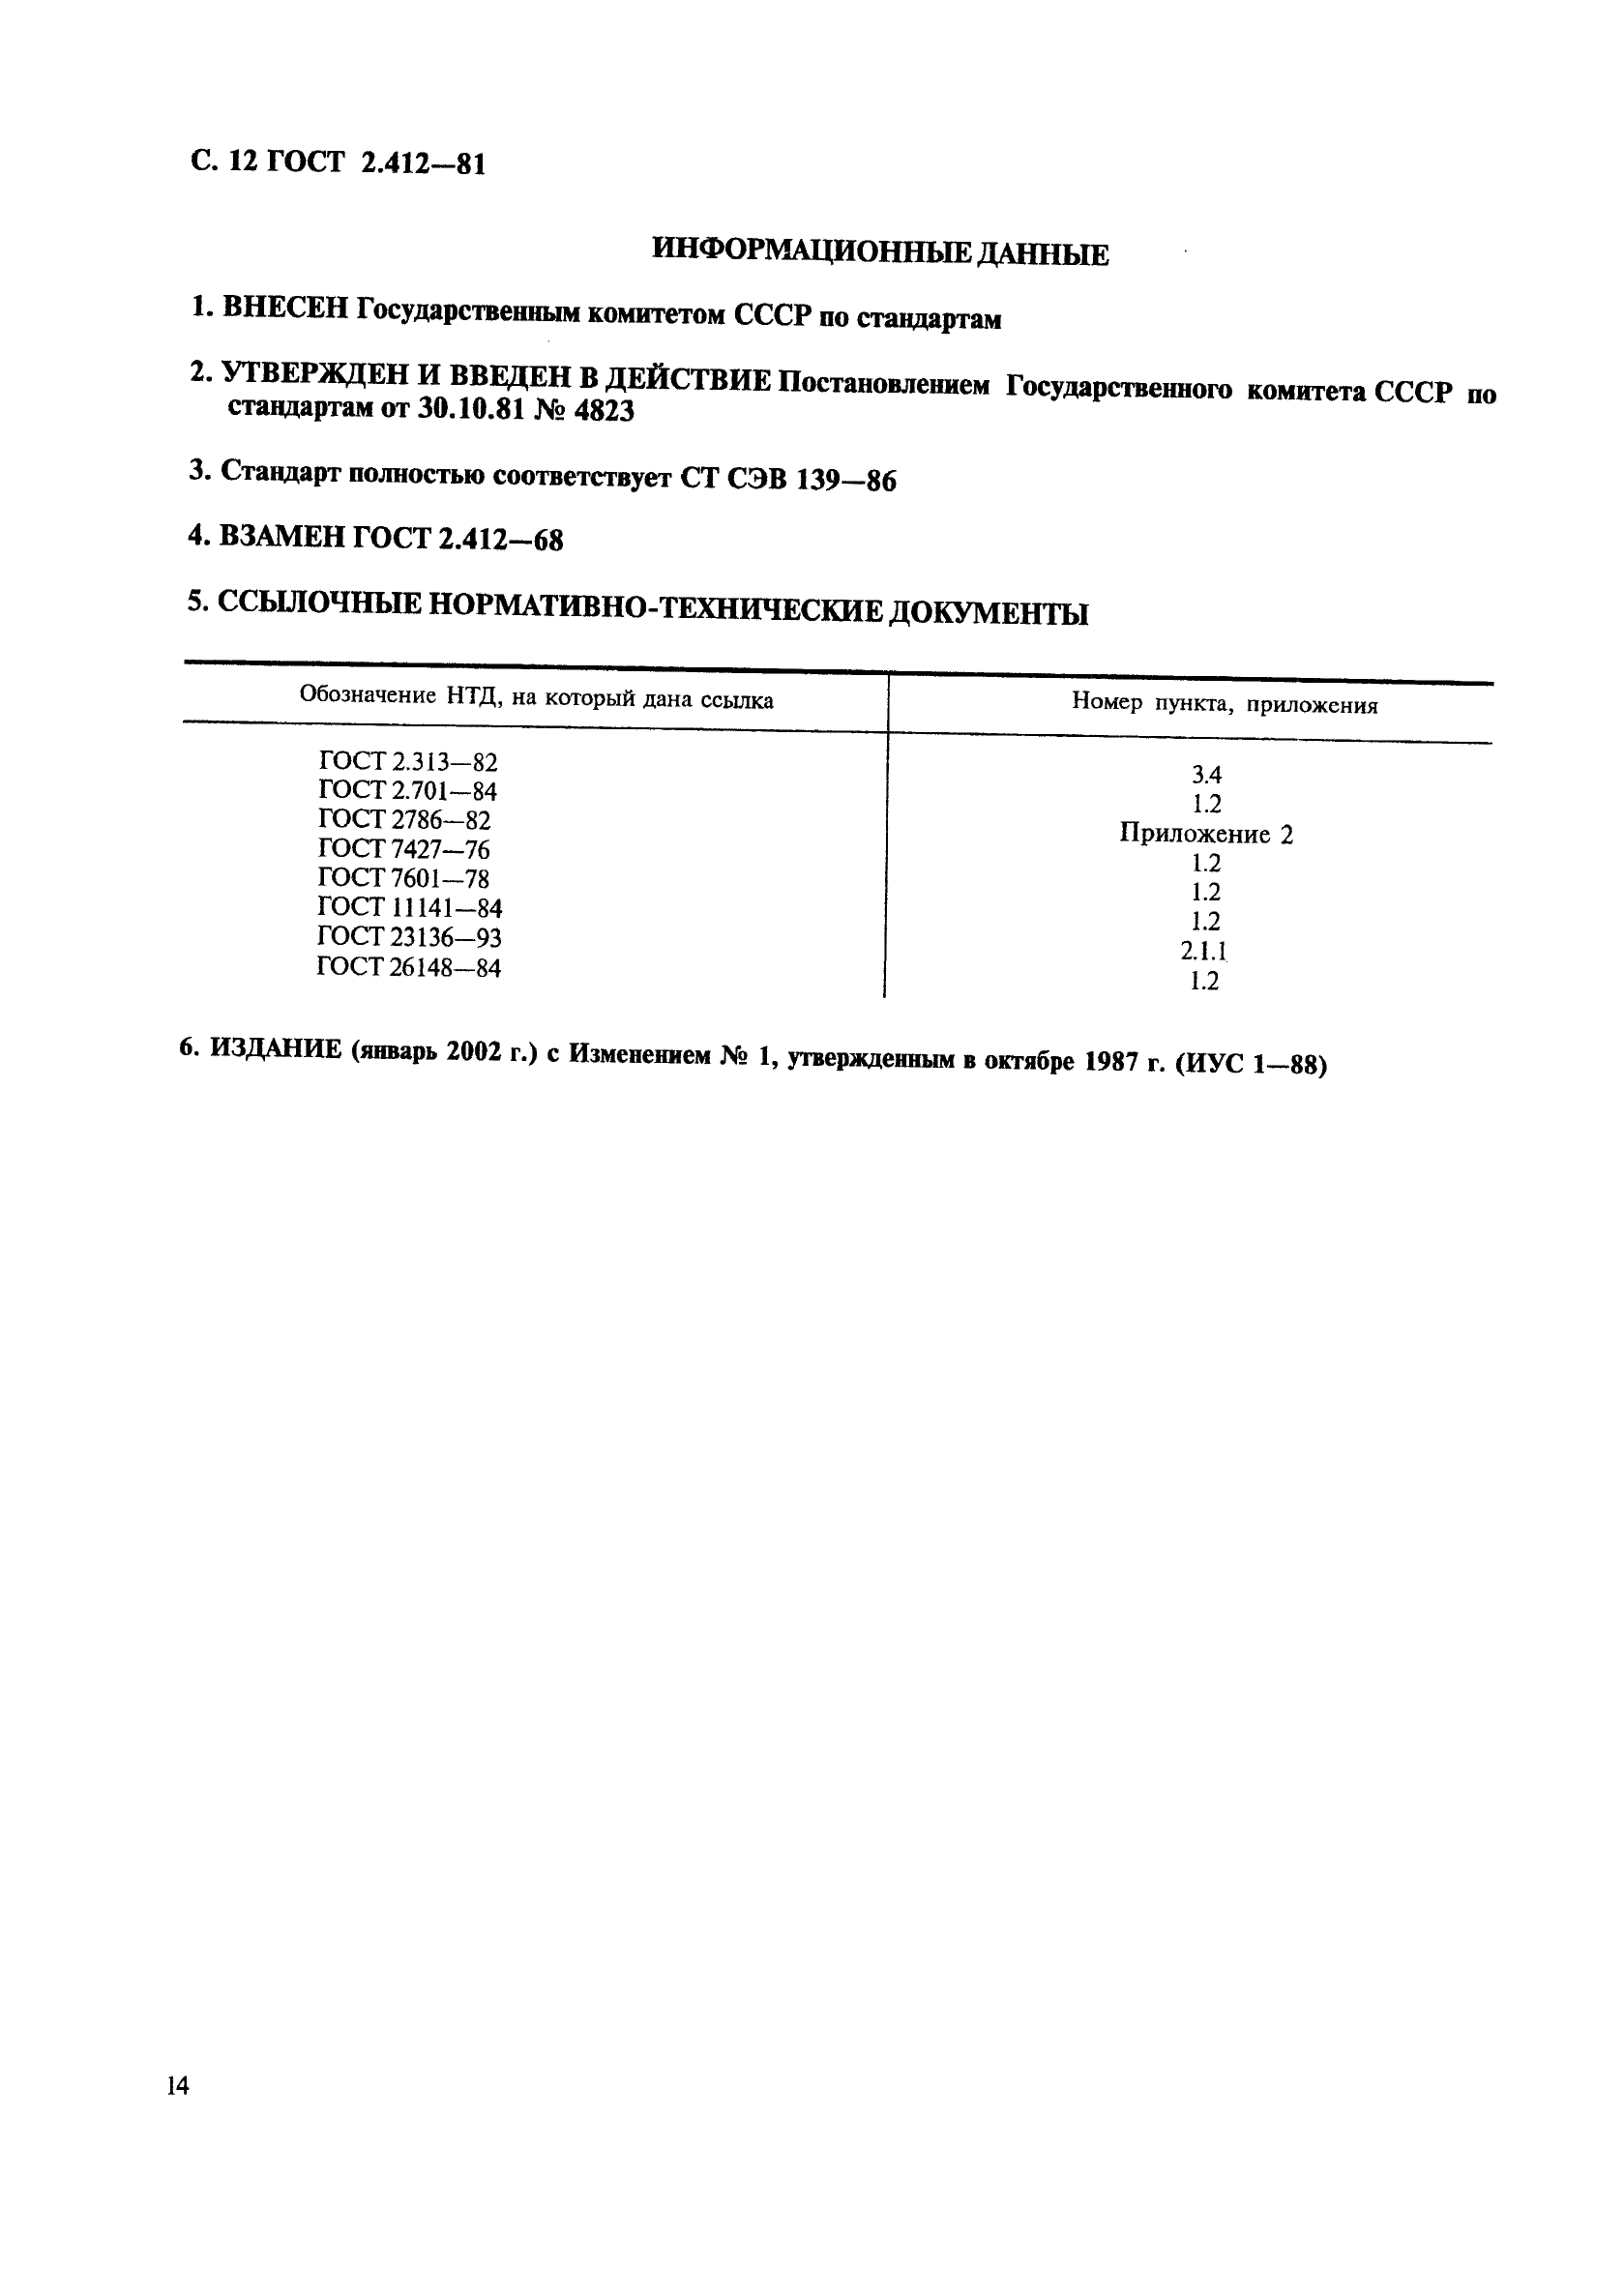 ГОСТ 2.412-81 Единая система конструкторской документации. Правила выполнения чертежей и схем оптических изделий (фото 14 из 14)